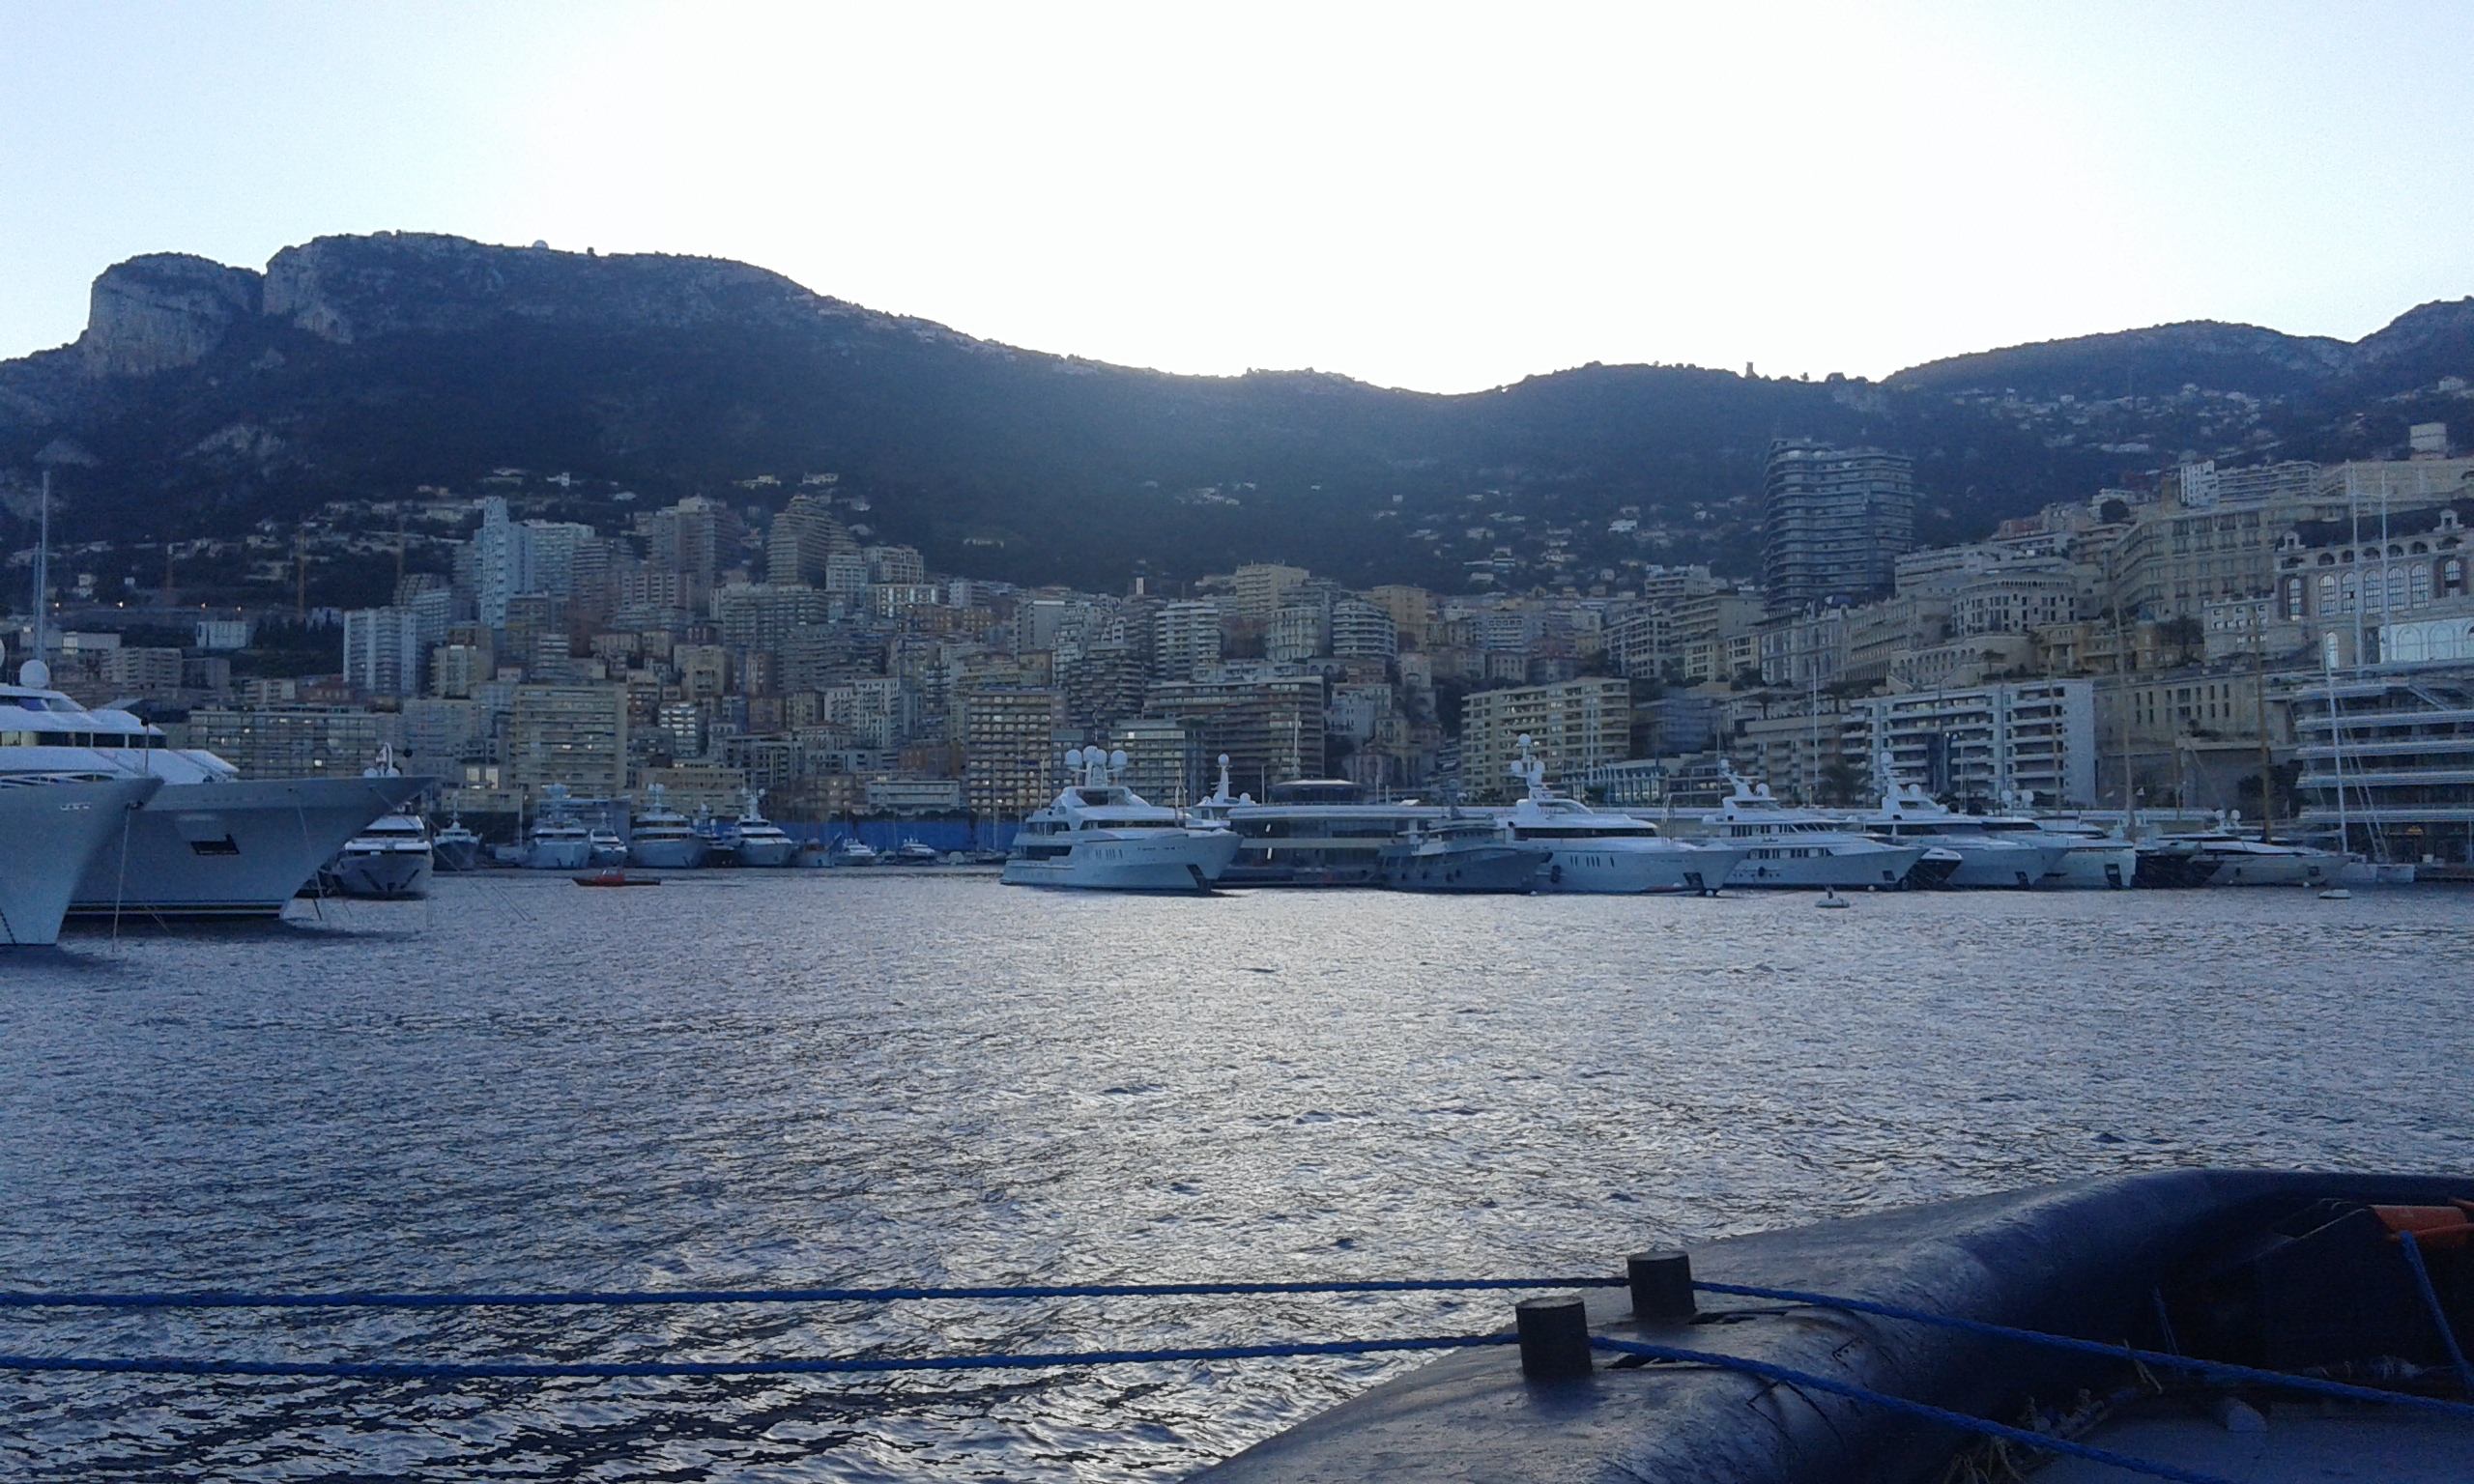 Allerta meteo lunedì 6 novembre: il comunicato diffuso nel Principato di Monaco